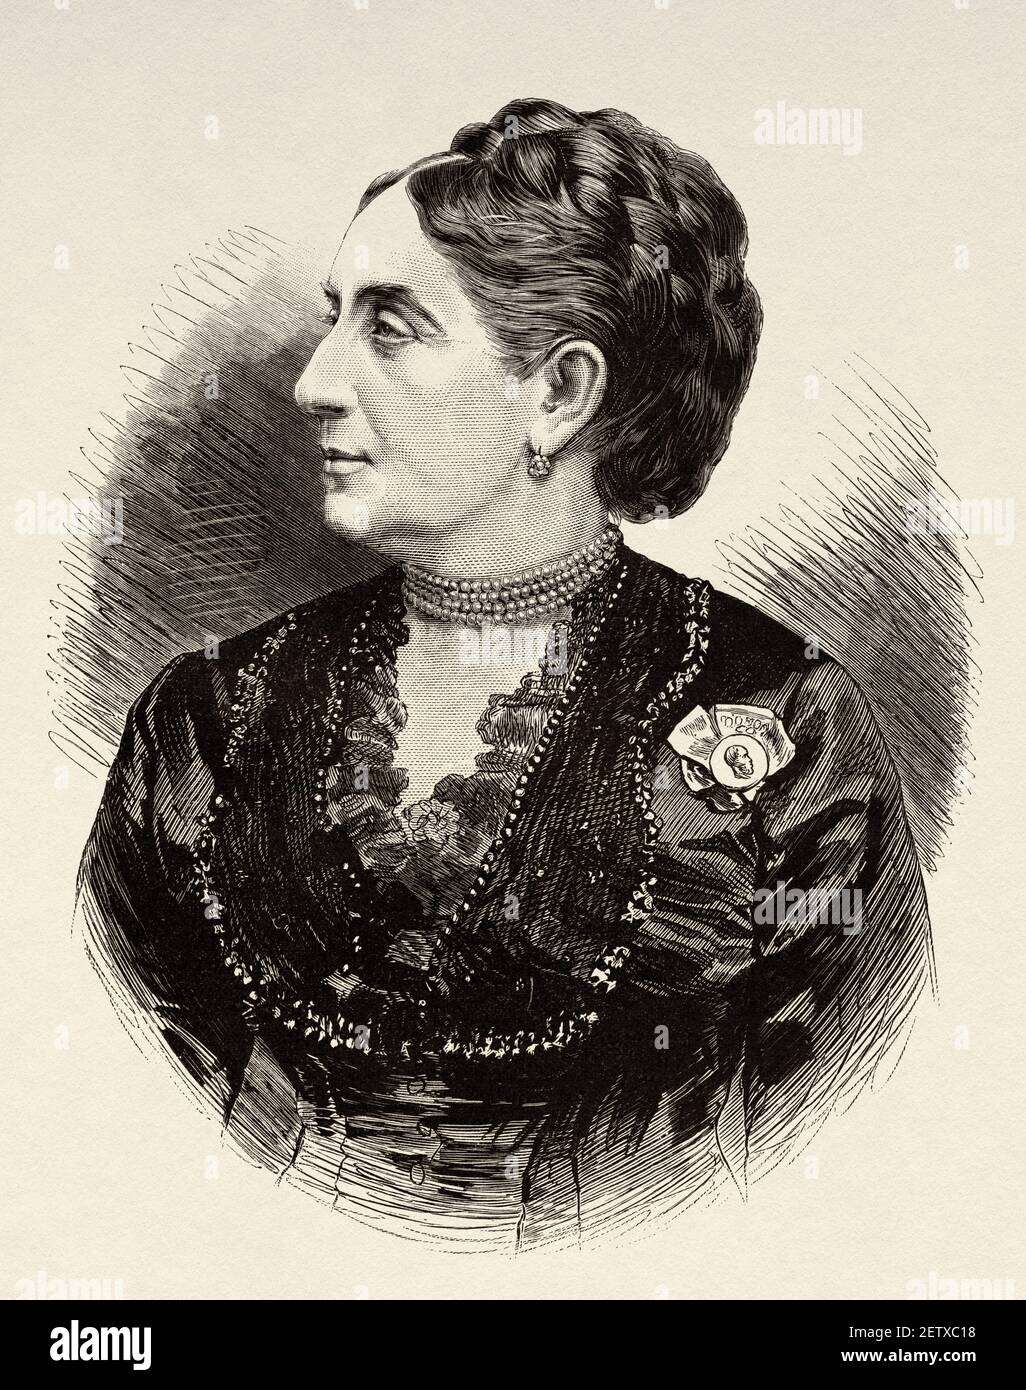 Die Schauspielerin Adelaide Ristori (1822-1906) Sie war eine renommierte italienische Theaterschauspielerin, die unter dem Spitznamen der Marquise bekannt wurde. Alte 19th Jahrhundert gravierte Illustration, El Mundo Ilustrado 1881 Stockfoto